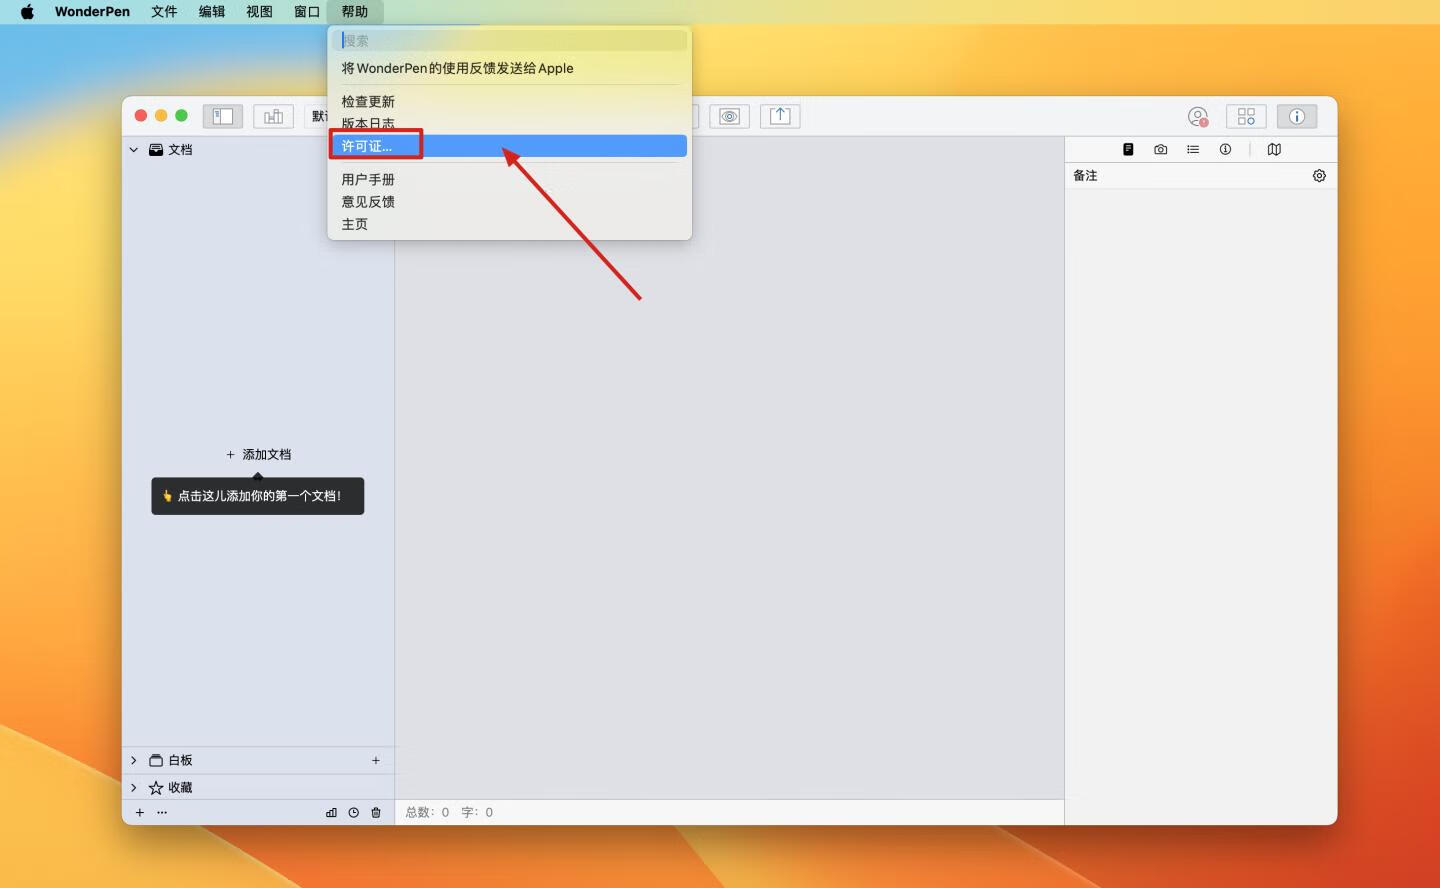 WonderPen妙笔 for Mac v2.4.1 中文激活版 Mac文本写作工具